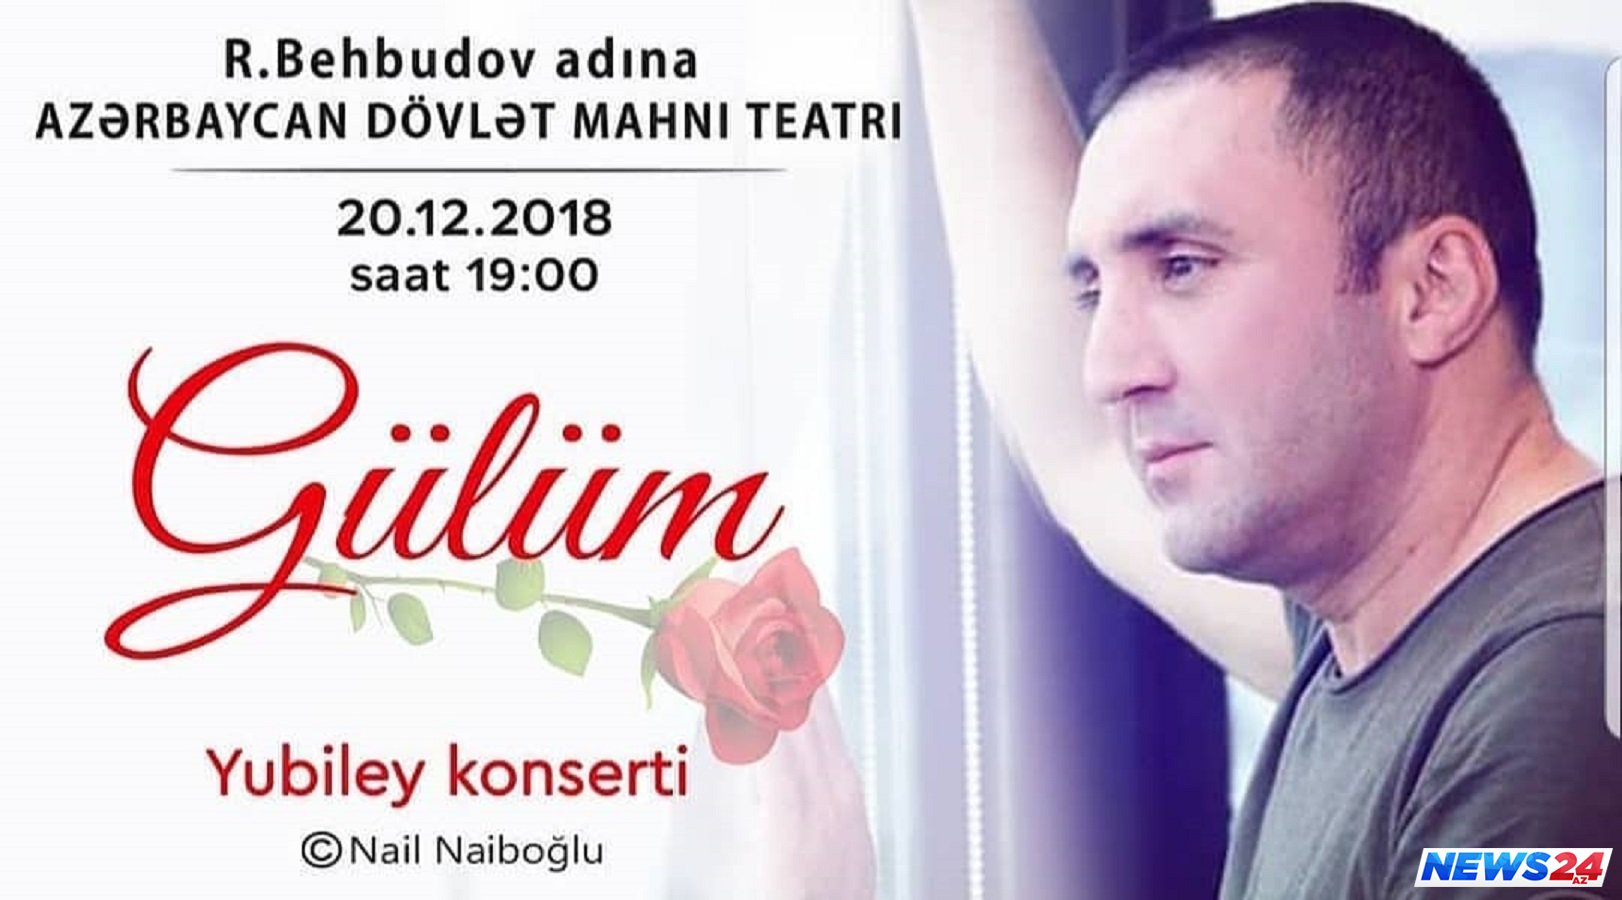 Nail Naiboğlunun yubiley konsertinin biletləri artıq satışda 